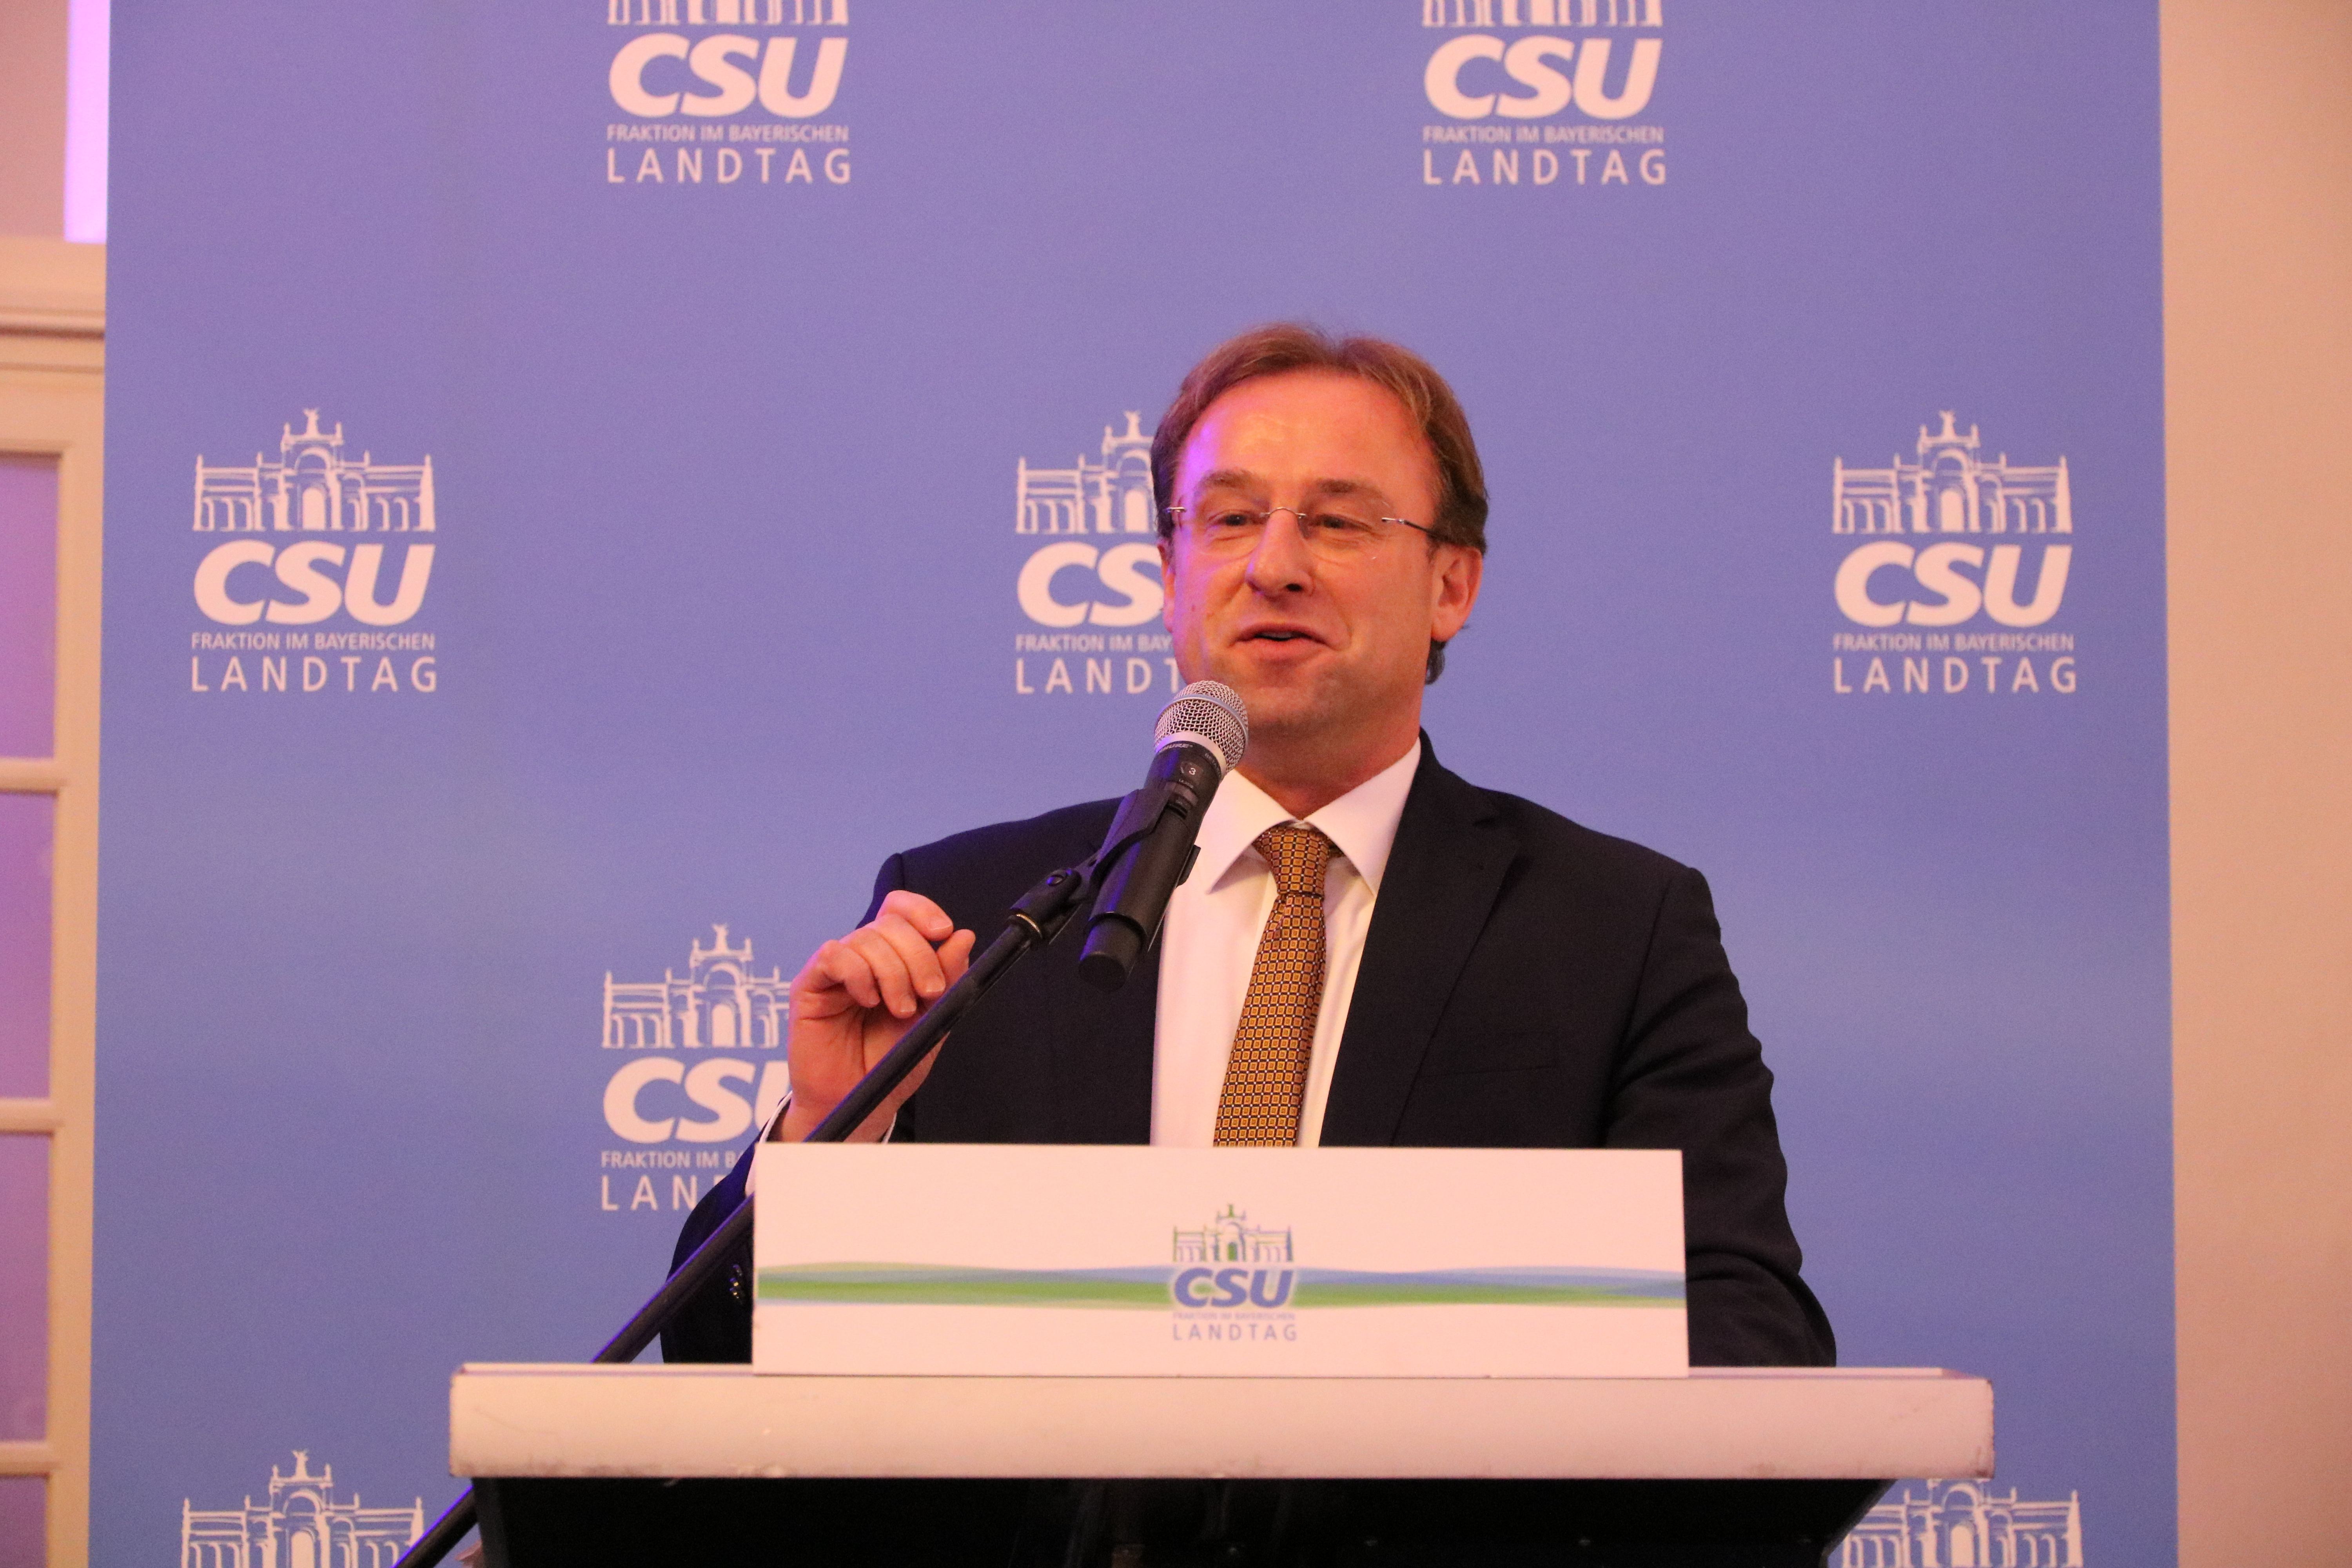 Arbeitskreisvorsitzender Wolfgang Fackler beleuchtete in seinem Grußwort die parlamentarische Arbeit zum Thema ÖD und lud zum anschließenden geselligen Austausch ein. (Foto: CSU-Fraktion)